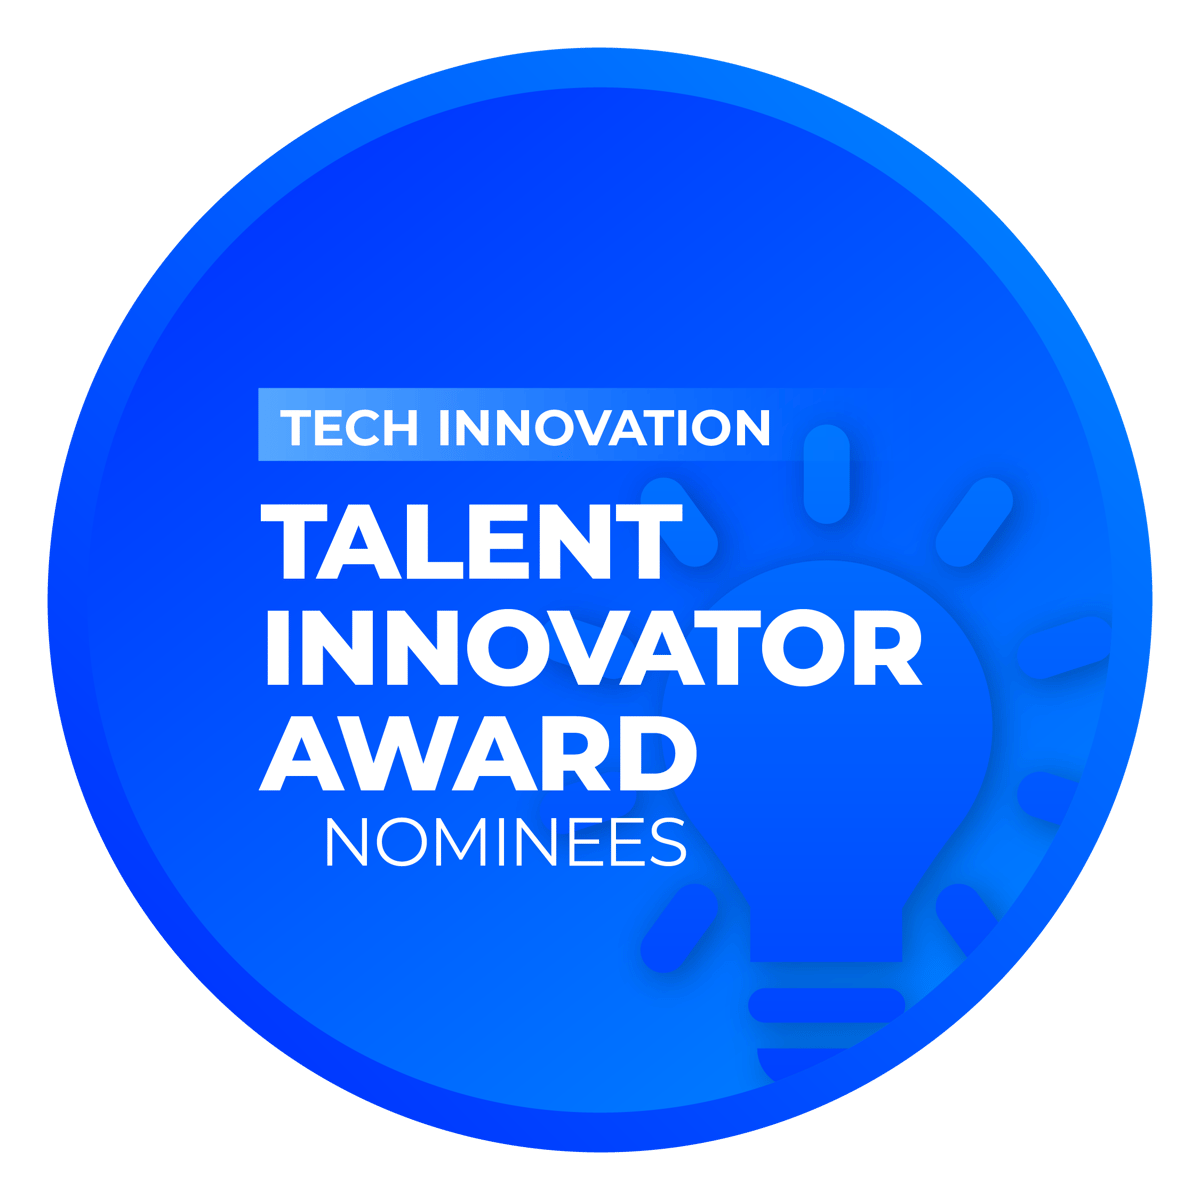 Talent Innovator Award: Tech Innovation Nominees